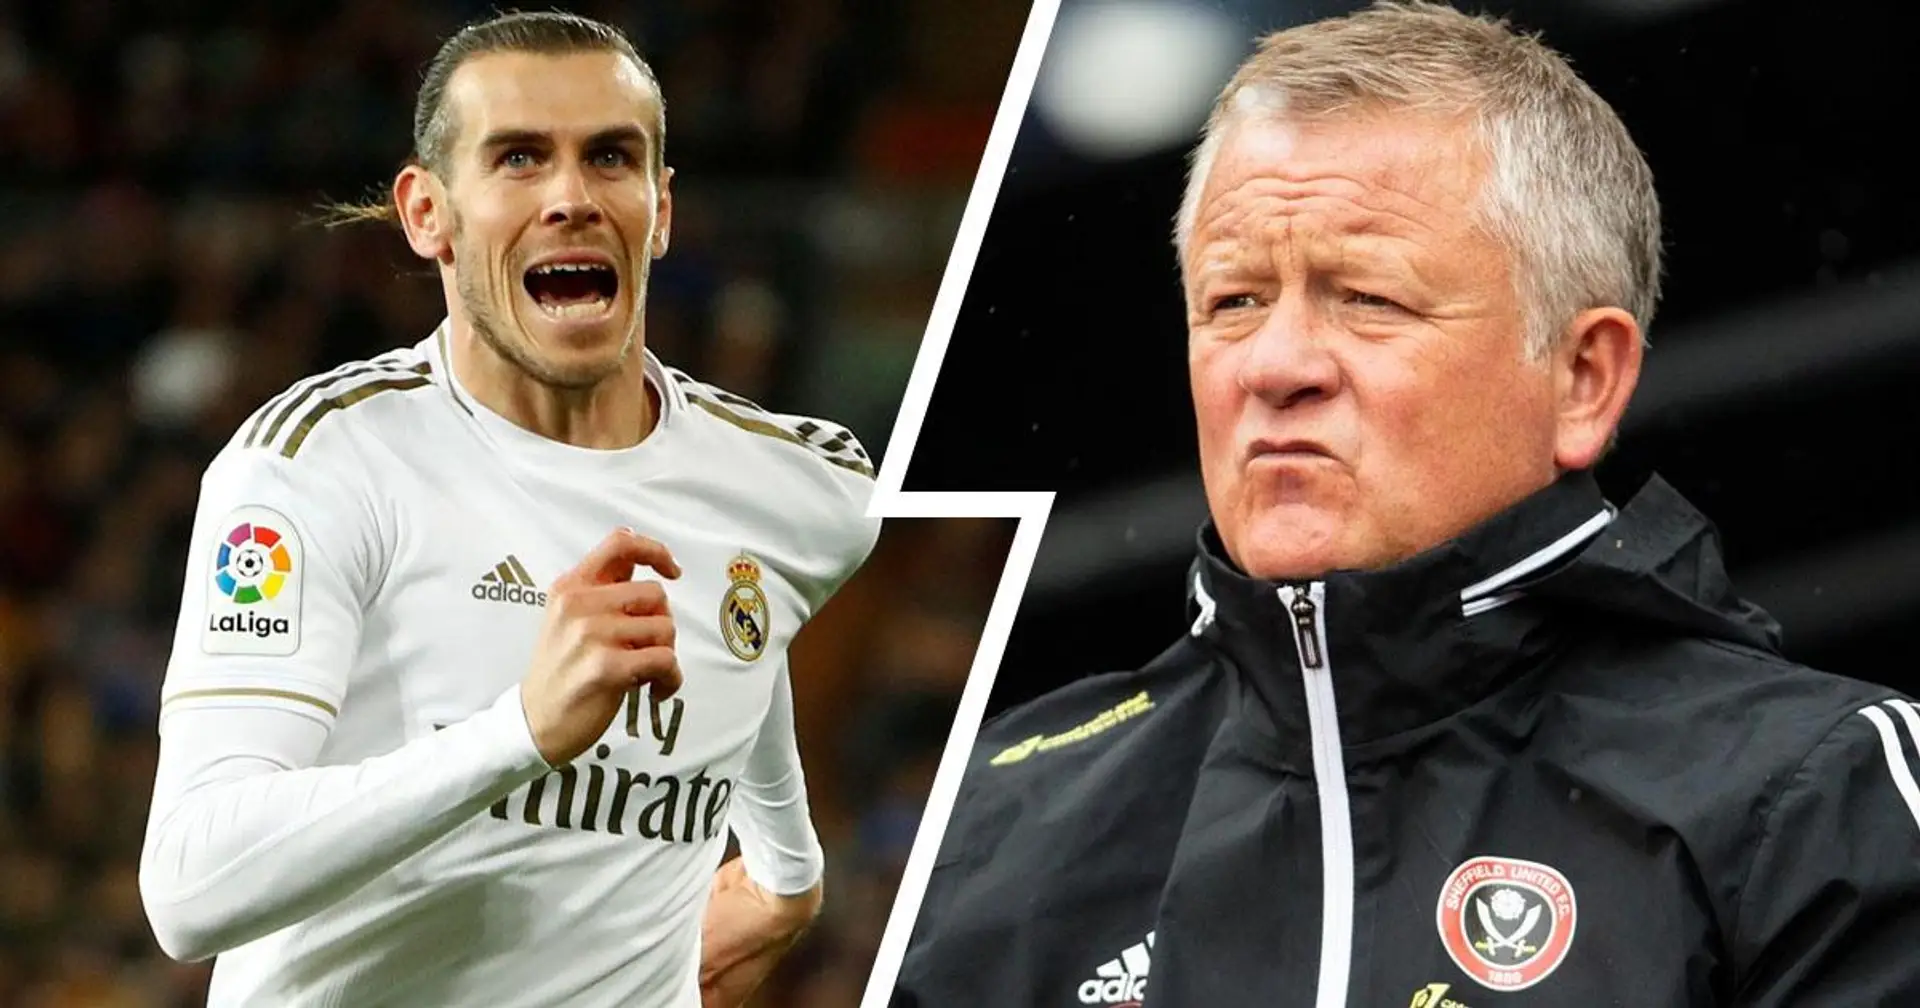 Le coach de Sheffield United donne une raison hilarante pour laquelle Bale devrait rejeter le prêt de Tottenham